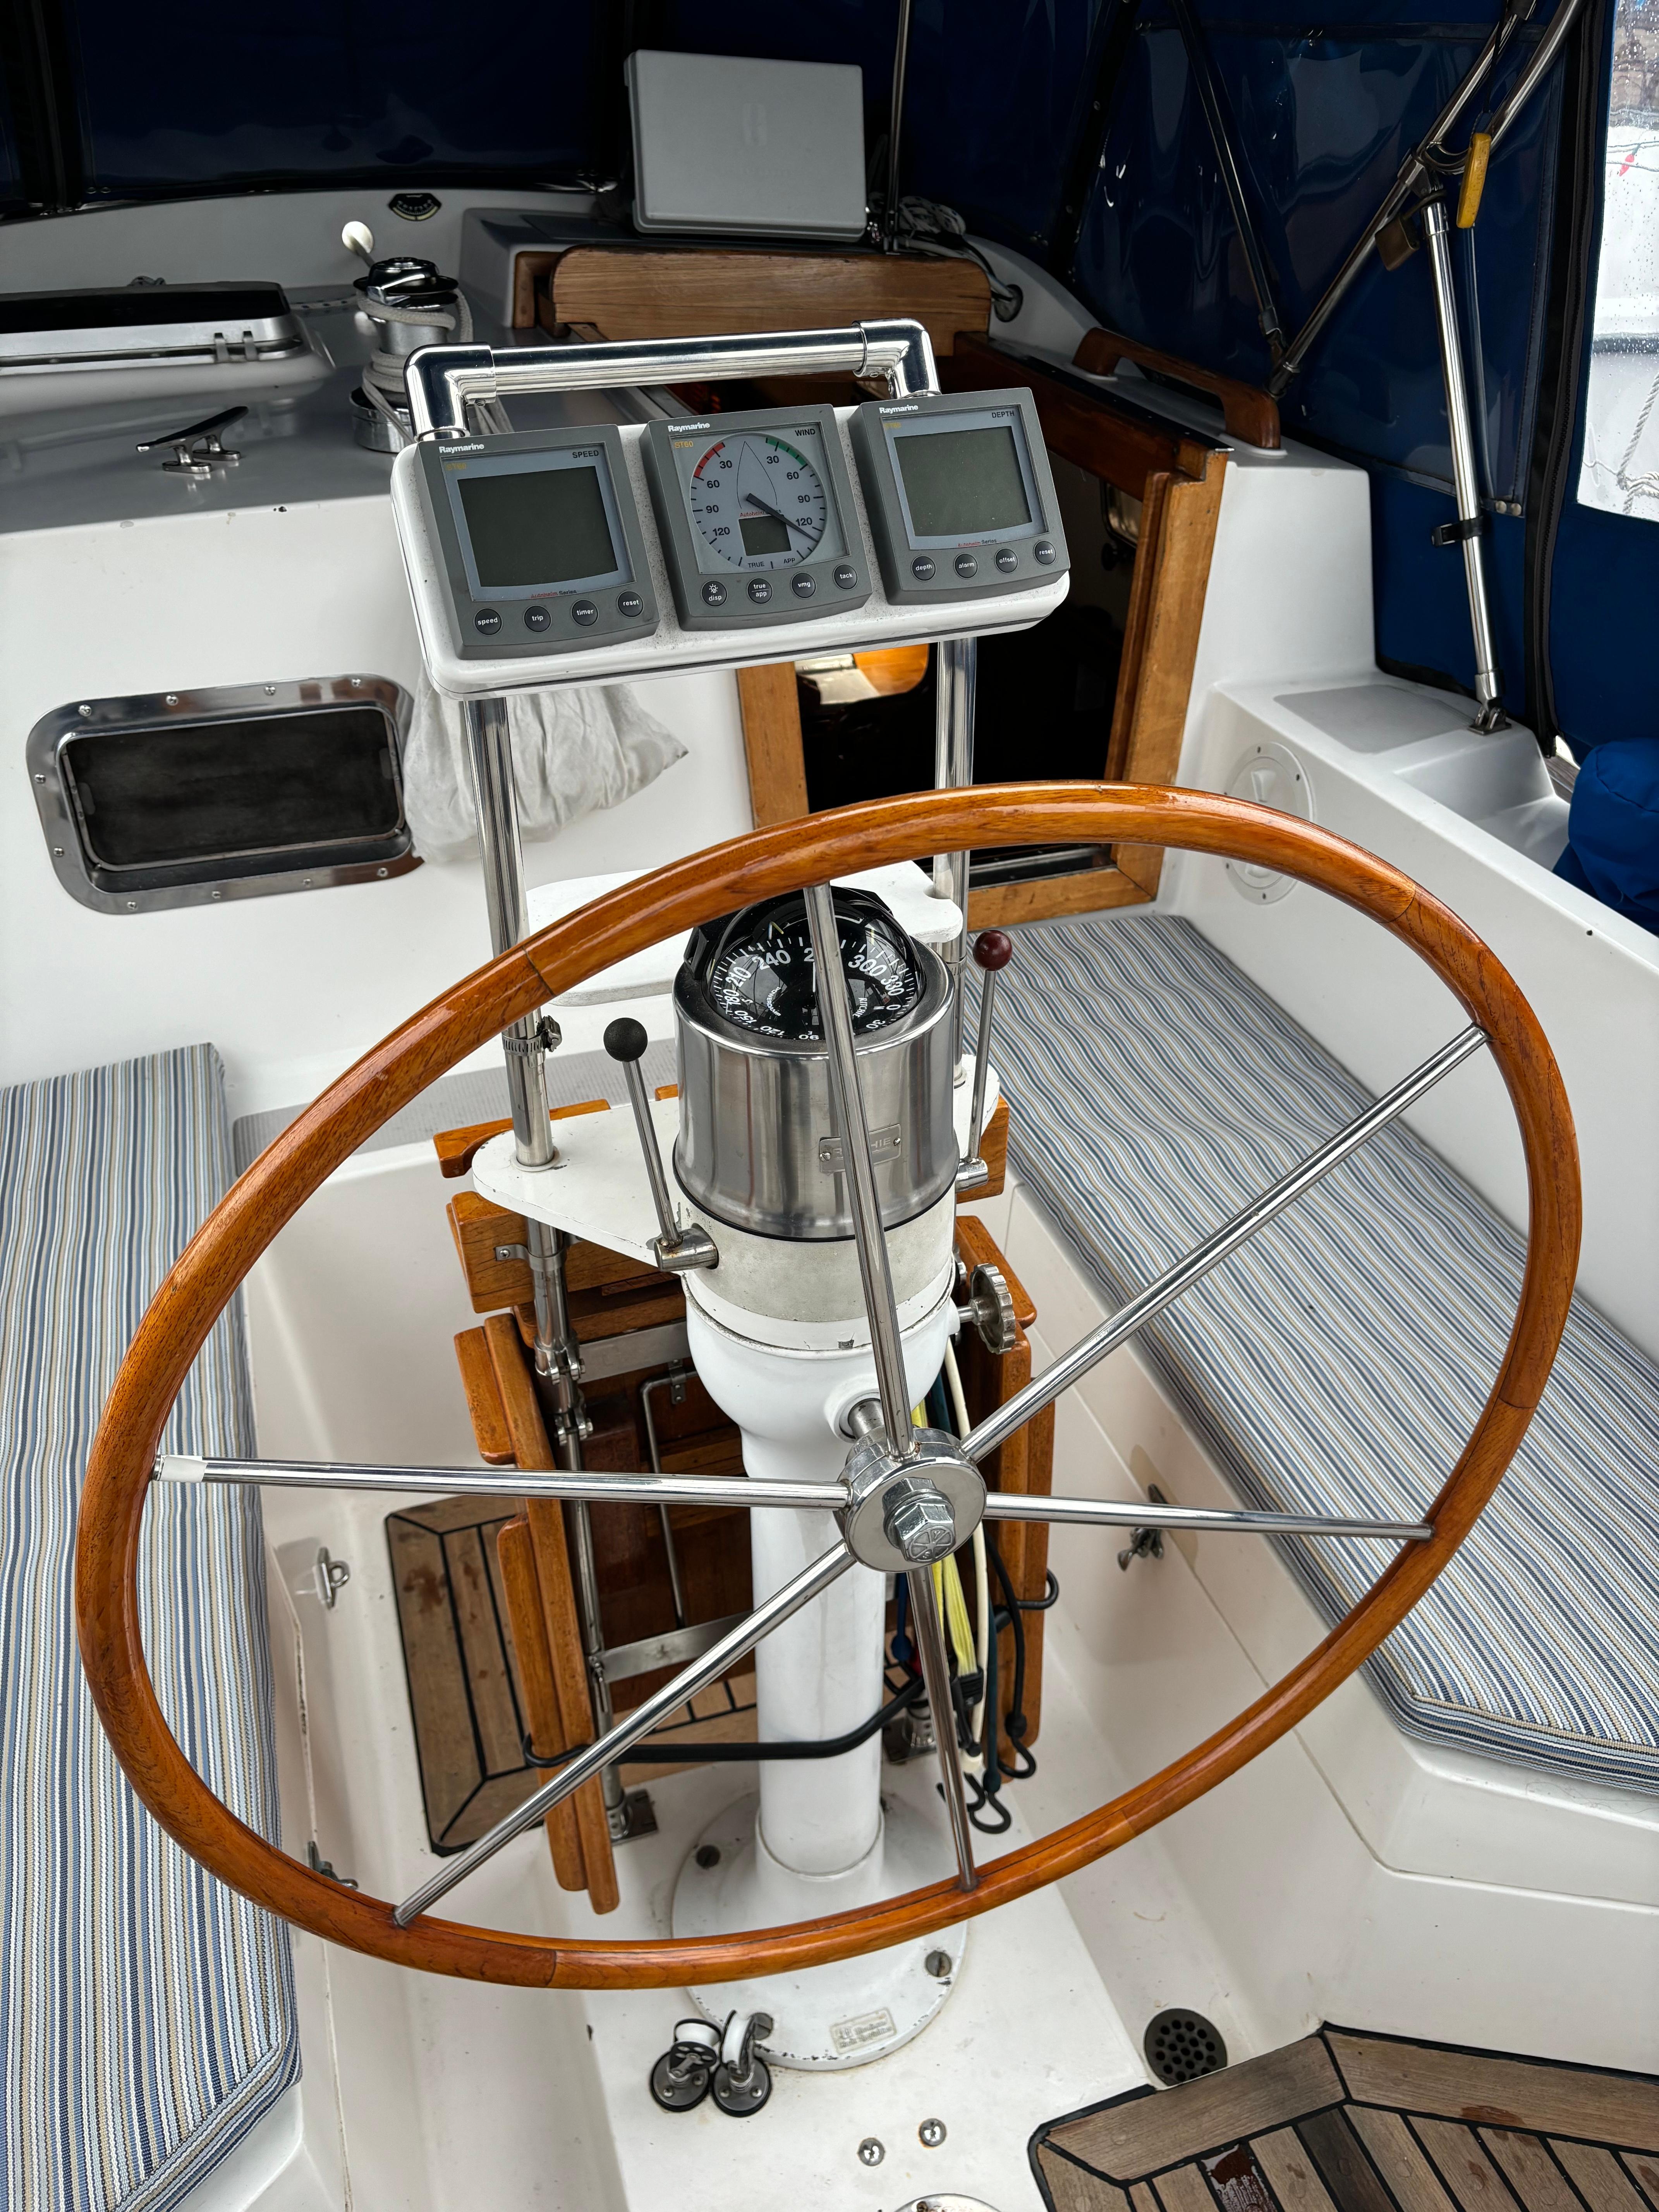 Cockpit Helm & Binnacle